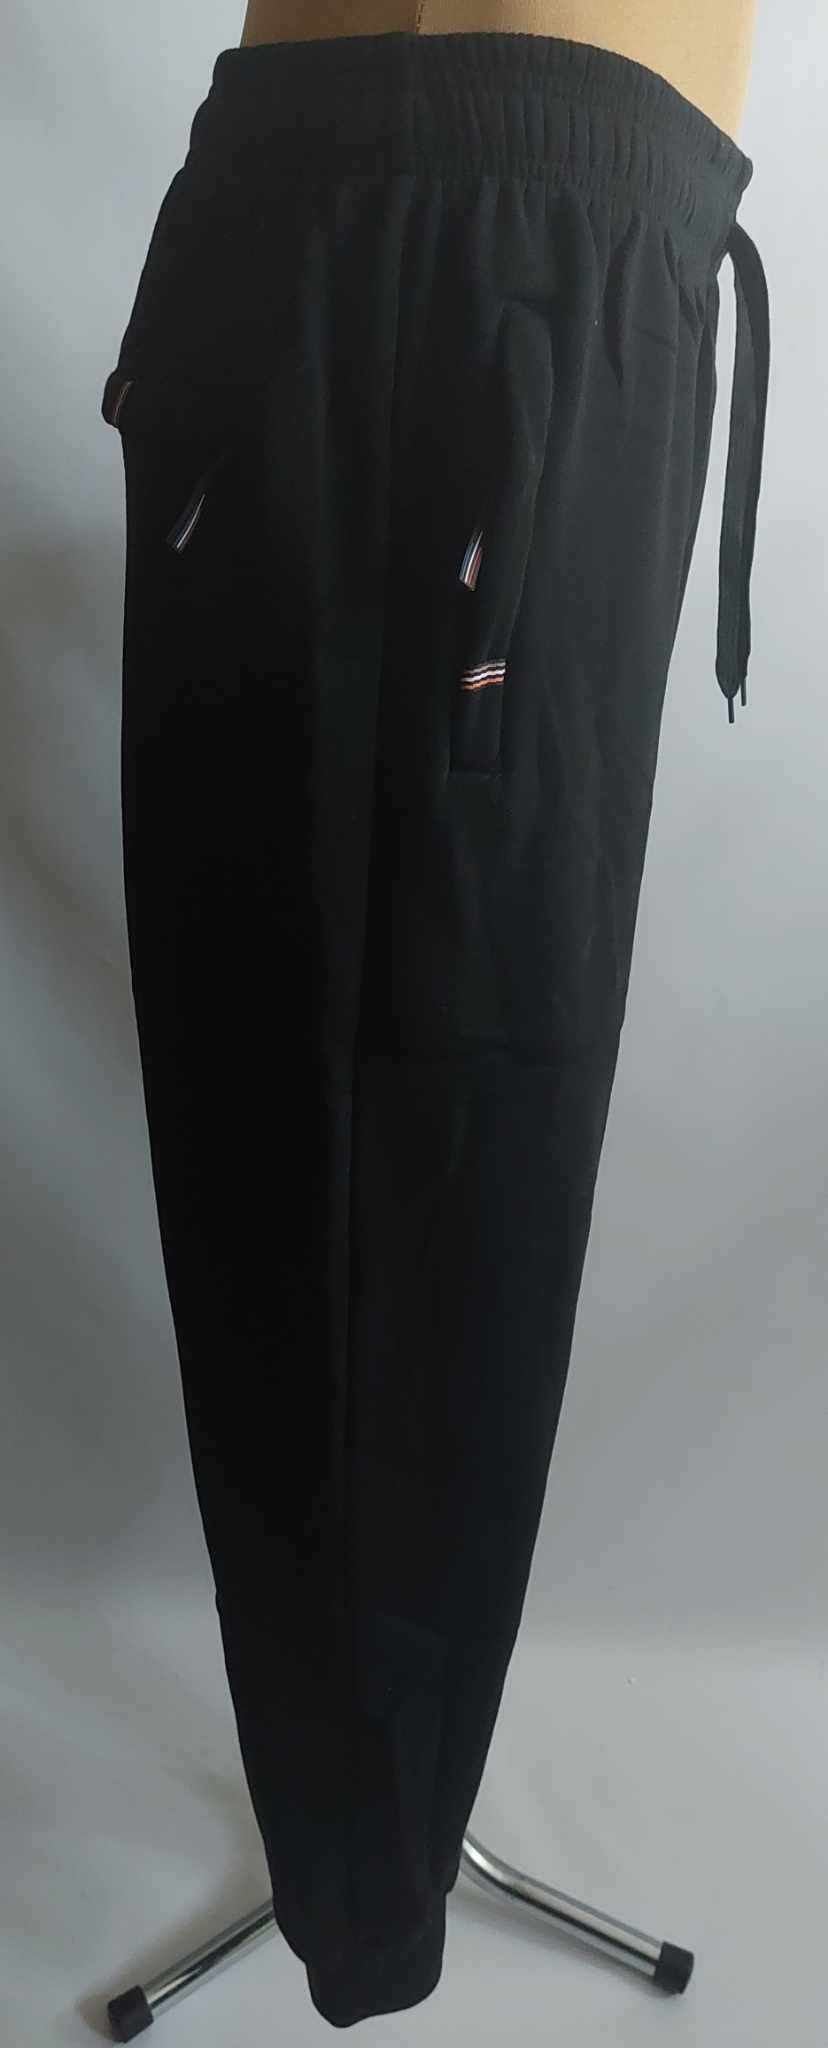 Spodnie męskie dresowe grube ocieplane meszkiem ściągacz PERFECT 3 XL